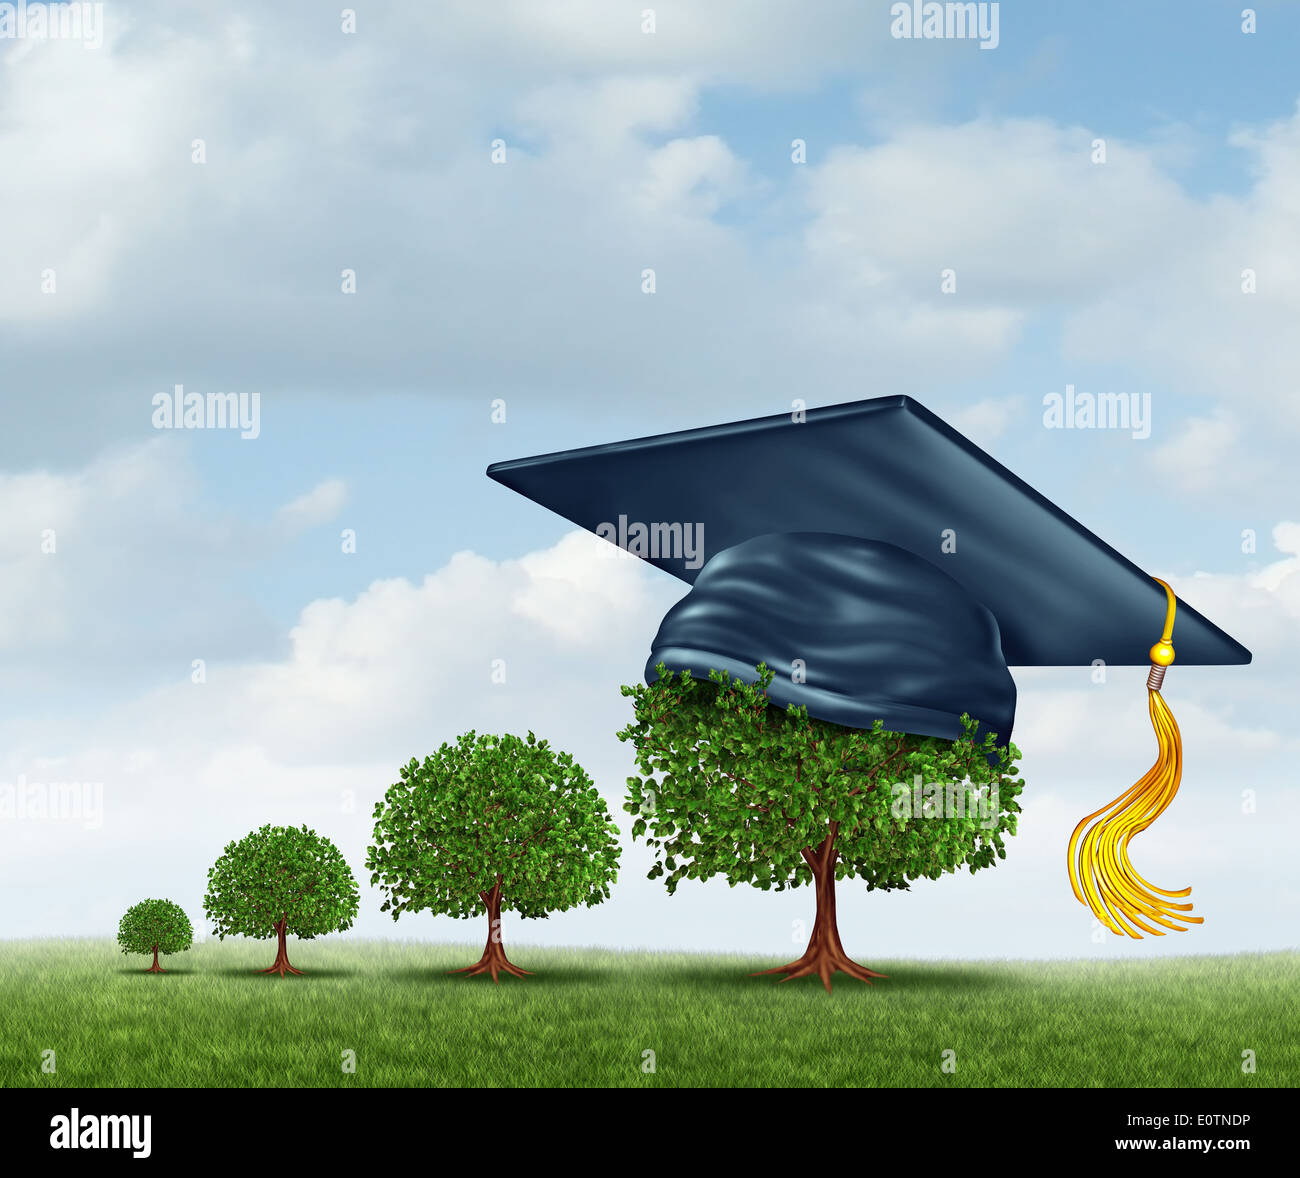 L'obtention du diplôme concept avec un groupe d'arbres d'un petit arbrisseau d'un grand arbre portant un conseil de mortier comme un prix de réalisation de l'éducation pour compléter le cycle d'apprentissage et les étapes d'une carrière future. Banque D'Images